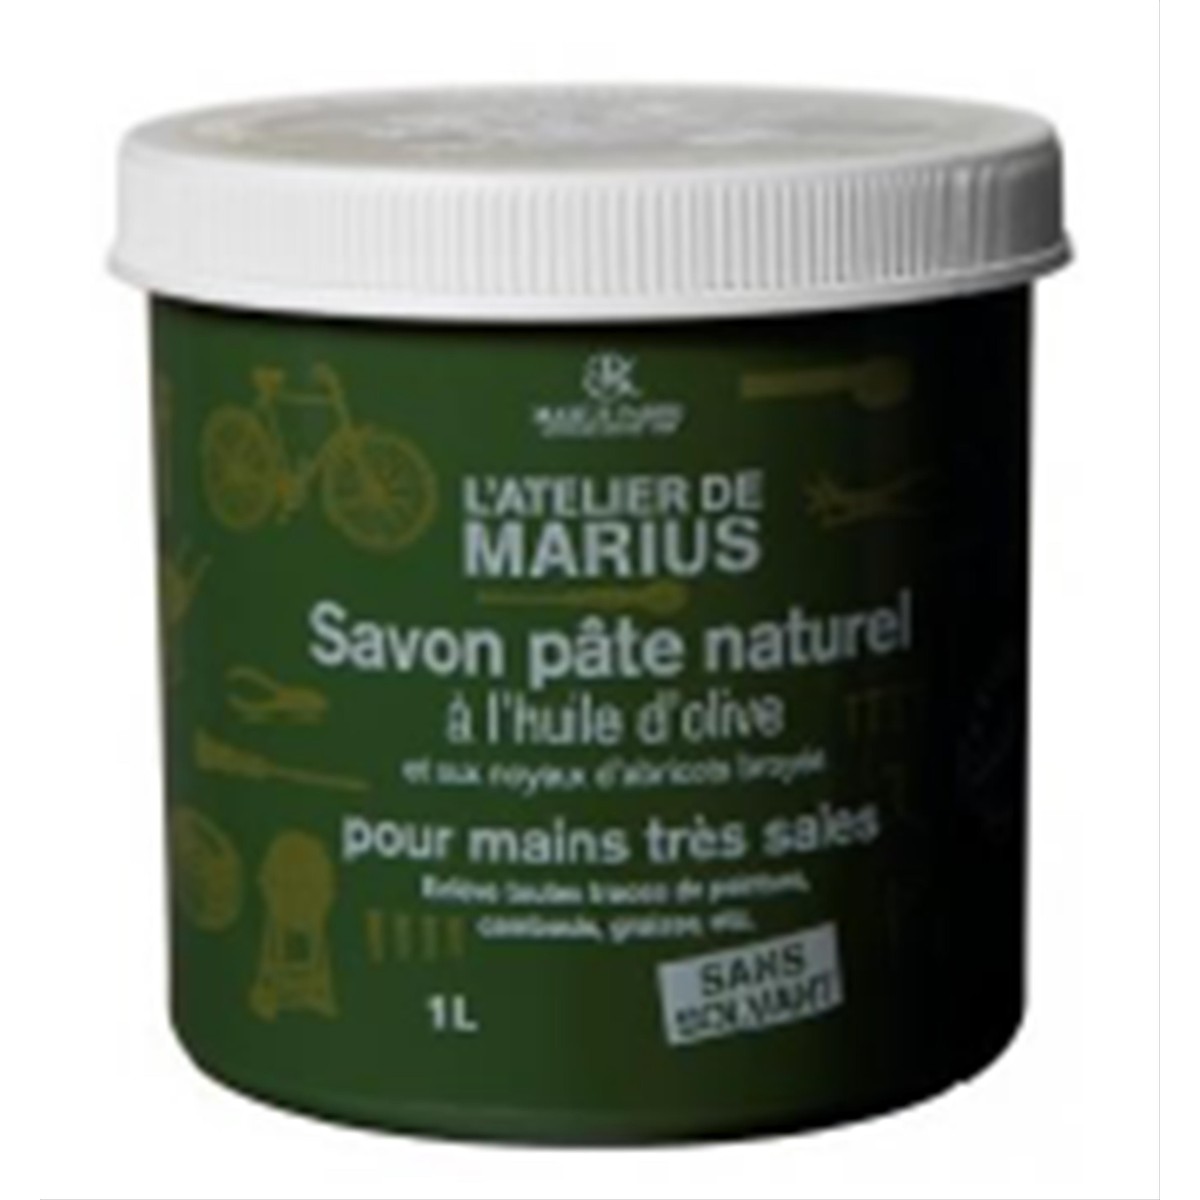 Marius Fabre  Savon pâte naturel grattant 1 l à l'huile d'olive atelier de marius  1L